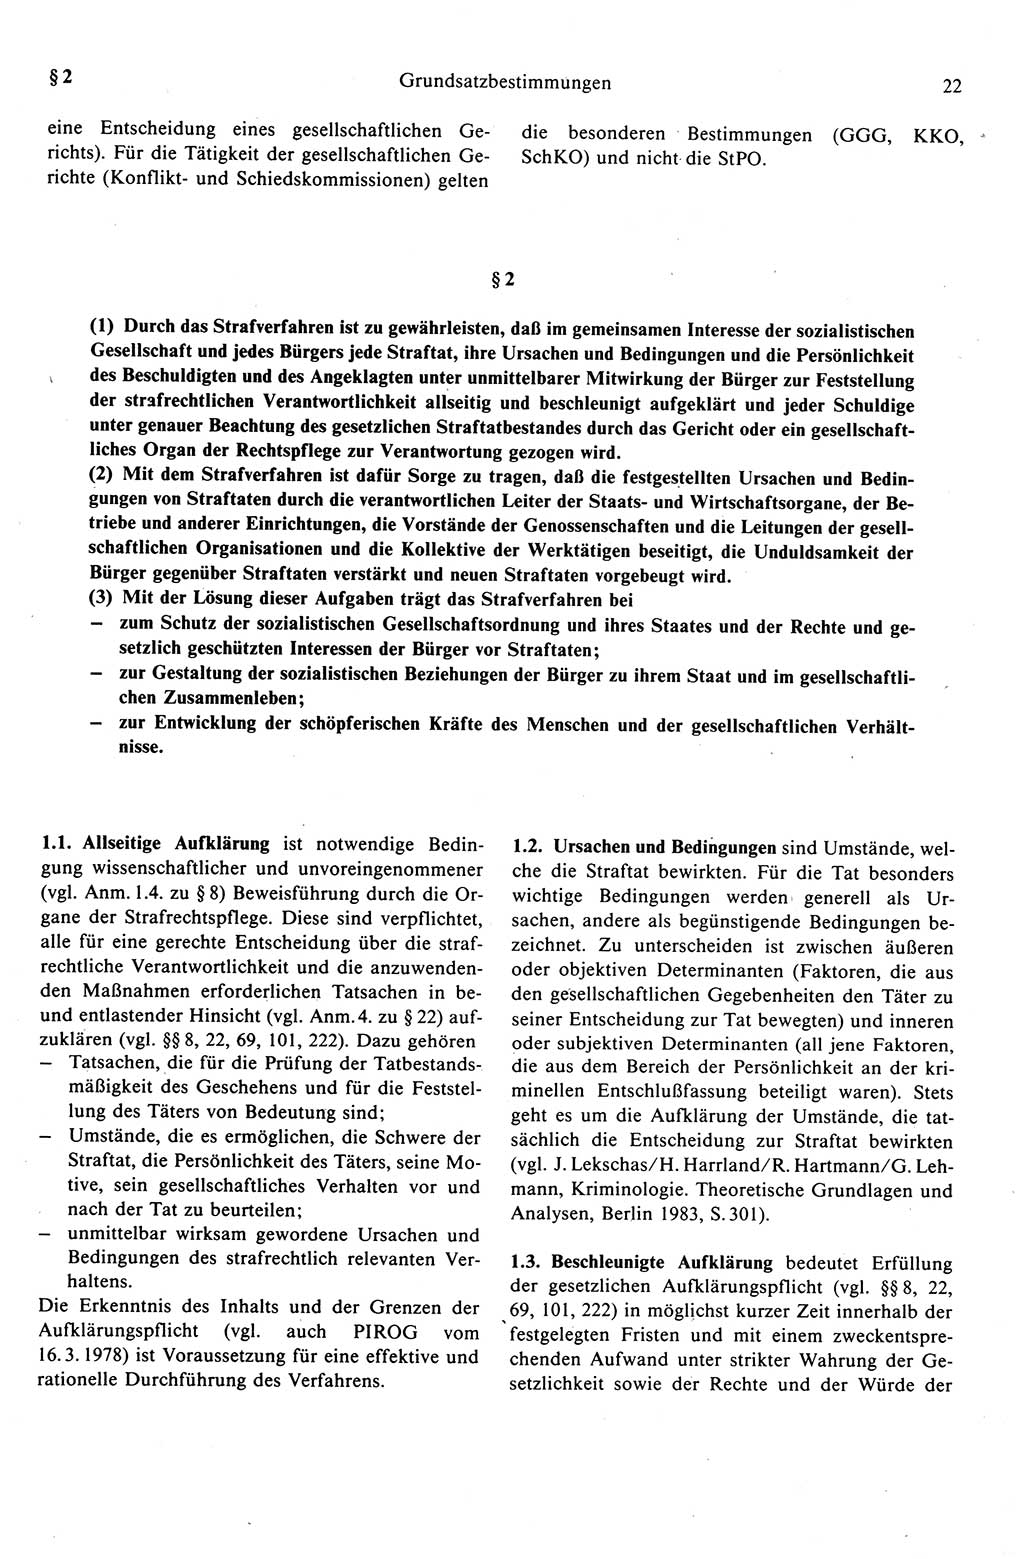 Strafprozeßrecht der DDR (Deutsche Demokratische Republik), Kommentar zur Strafprozeßordnung (StPO) 1989, Seite 22 (Strafprozeßr. DDR Komm. StPO 1989, S. 22)